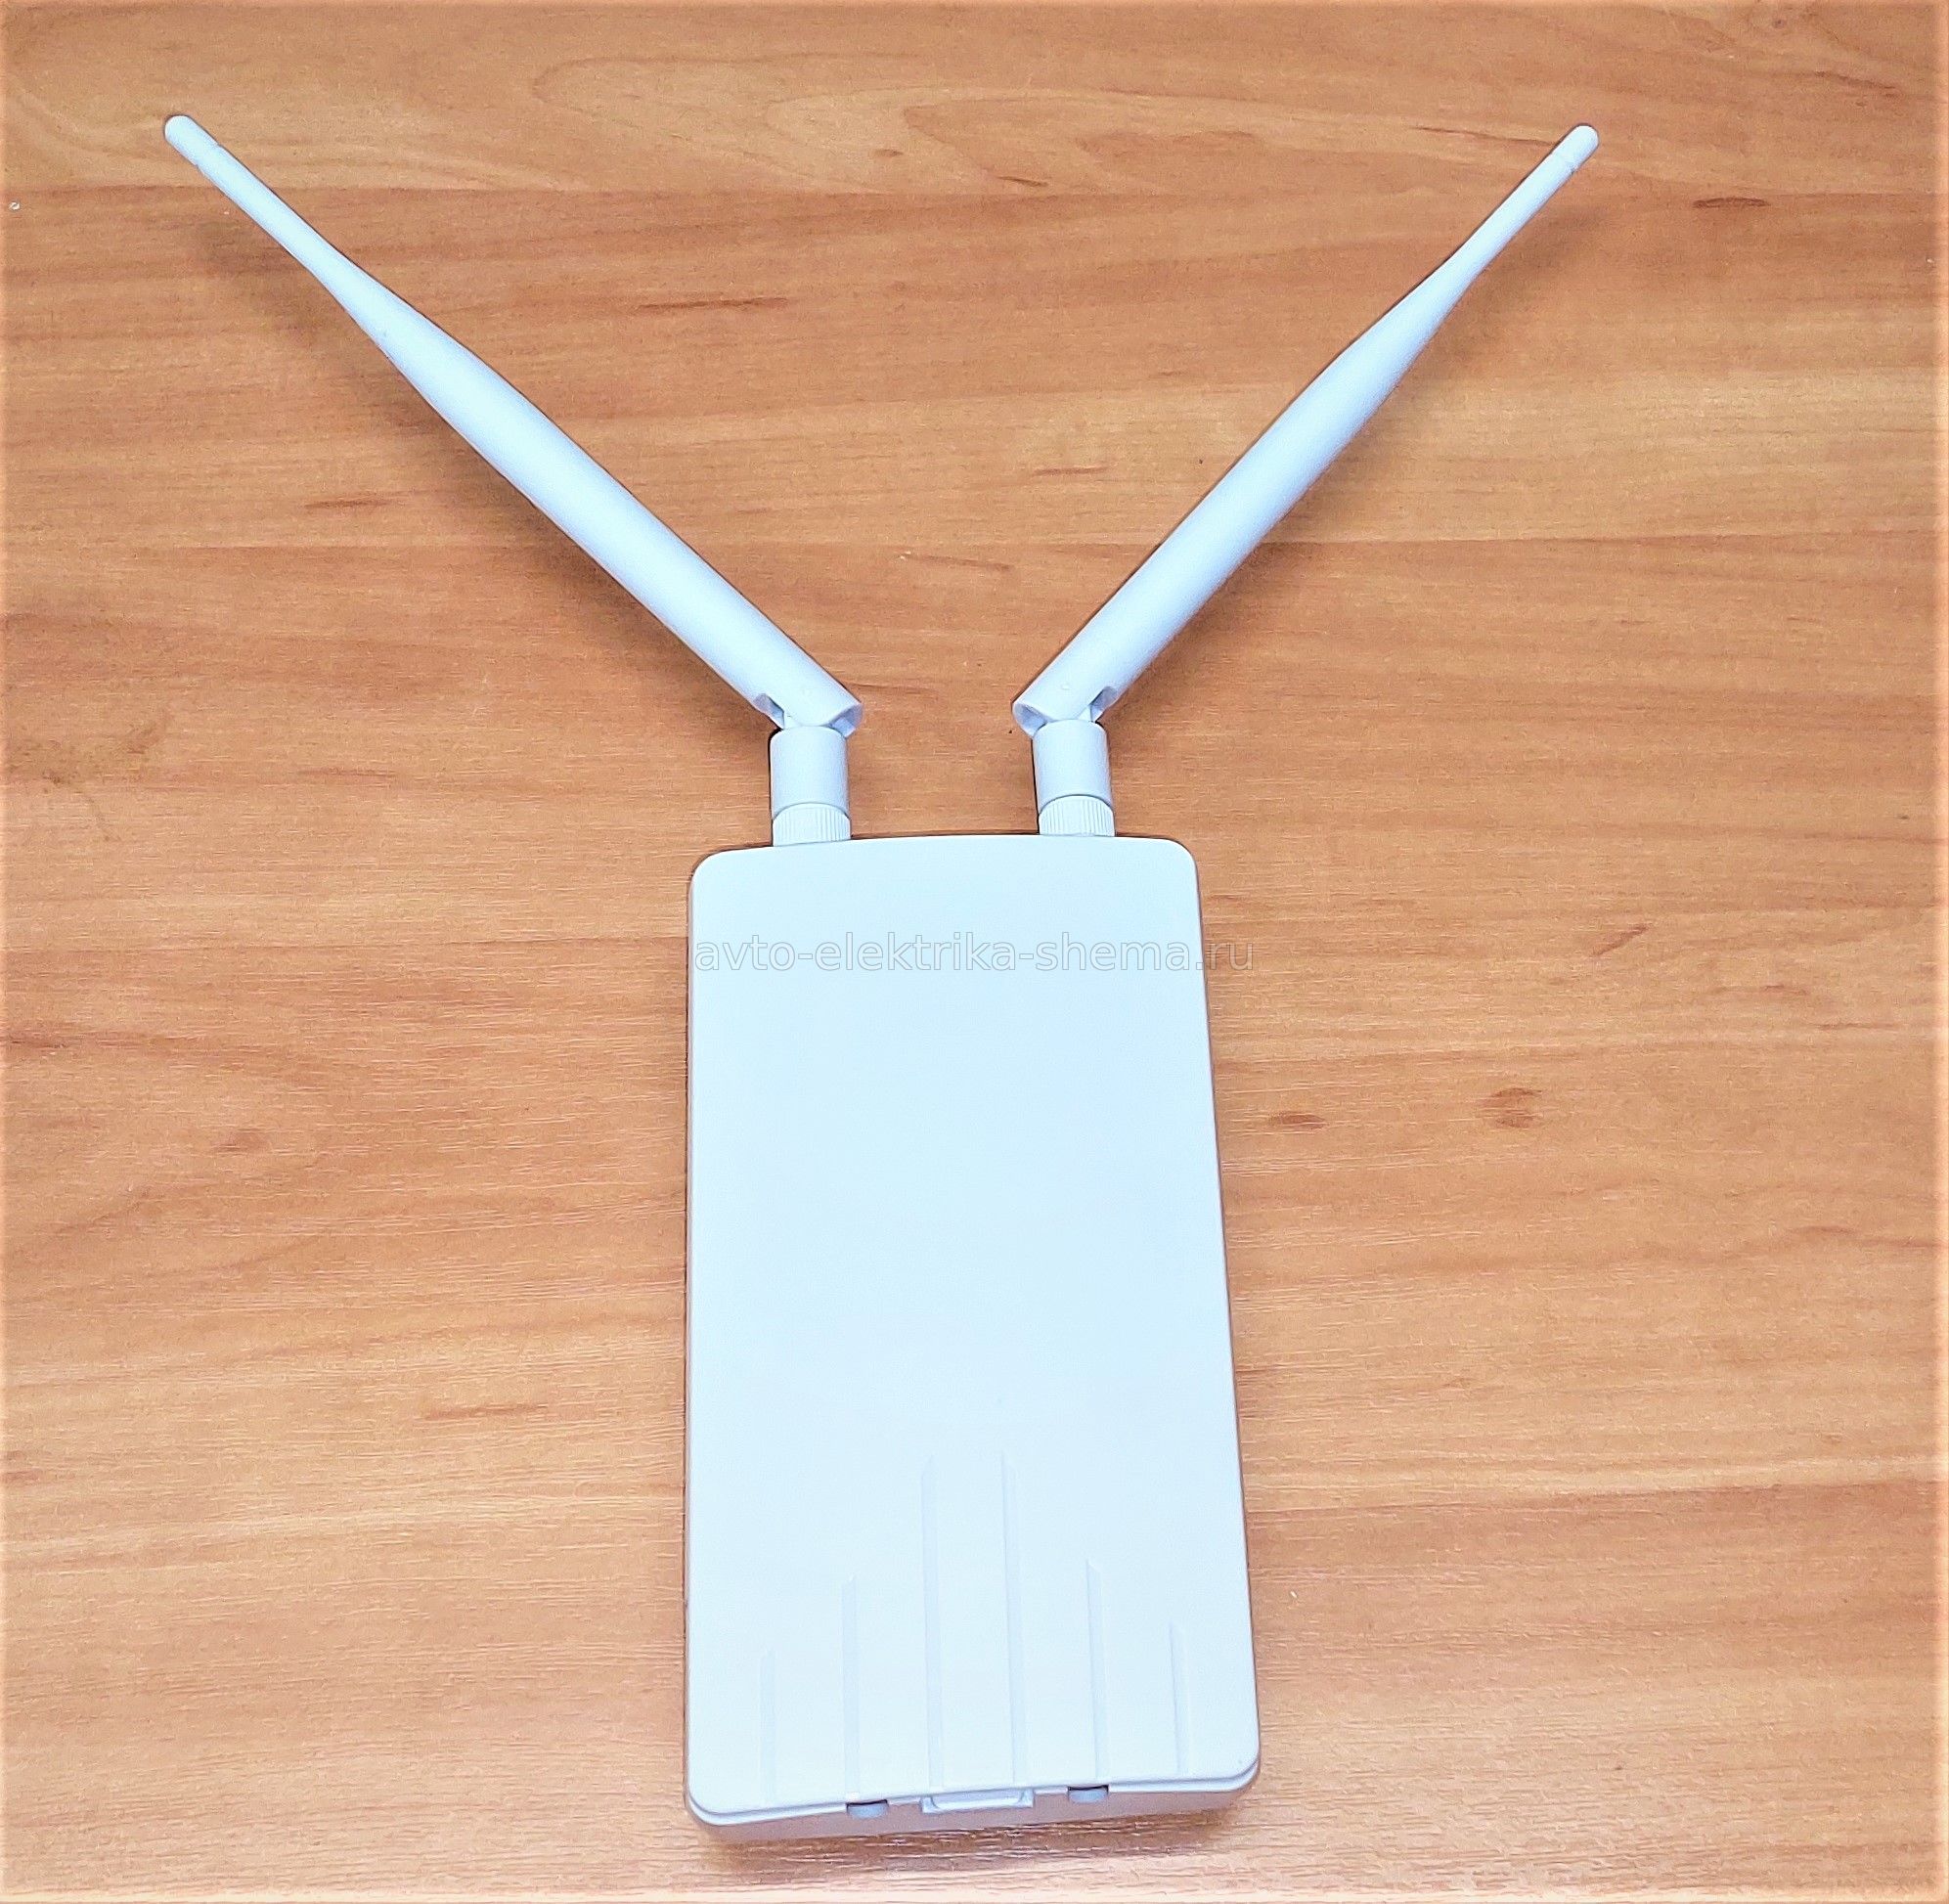 Как усилить wifi сигнал GSM роутера